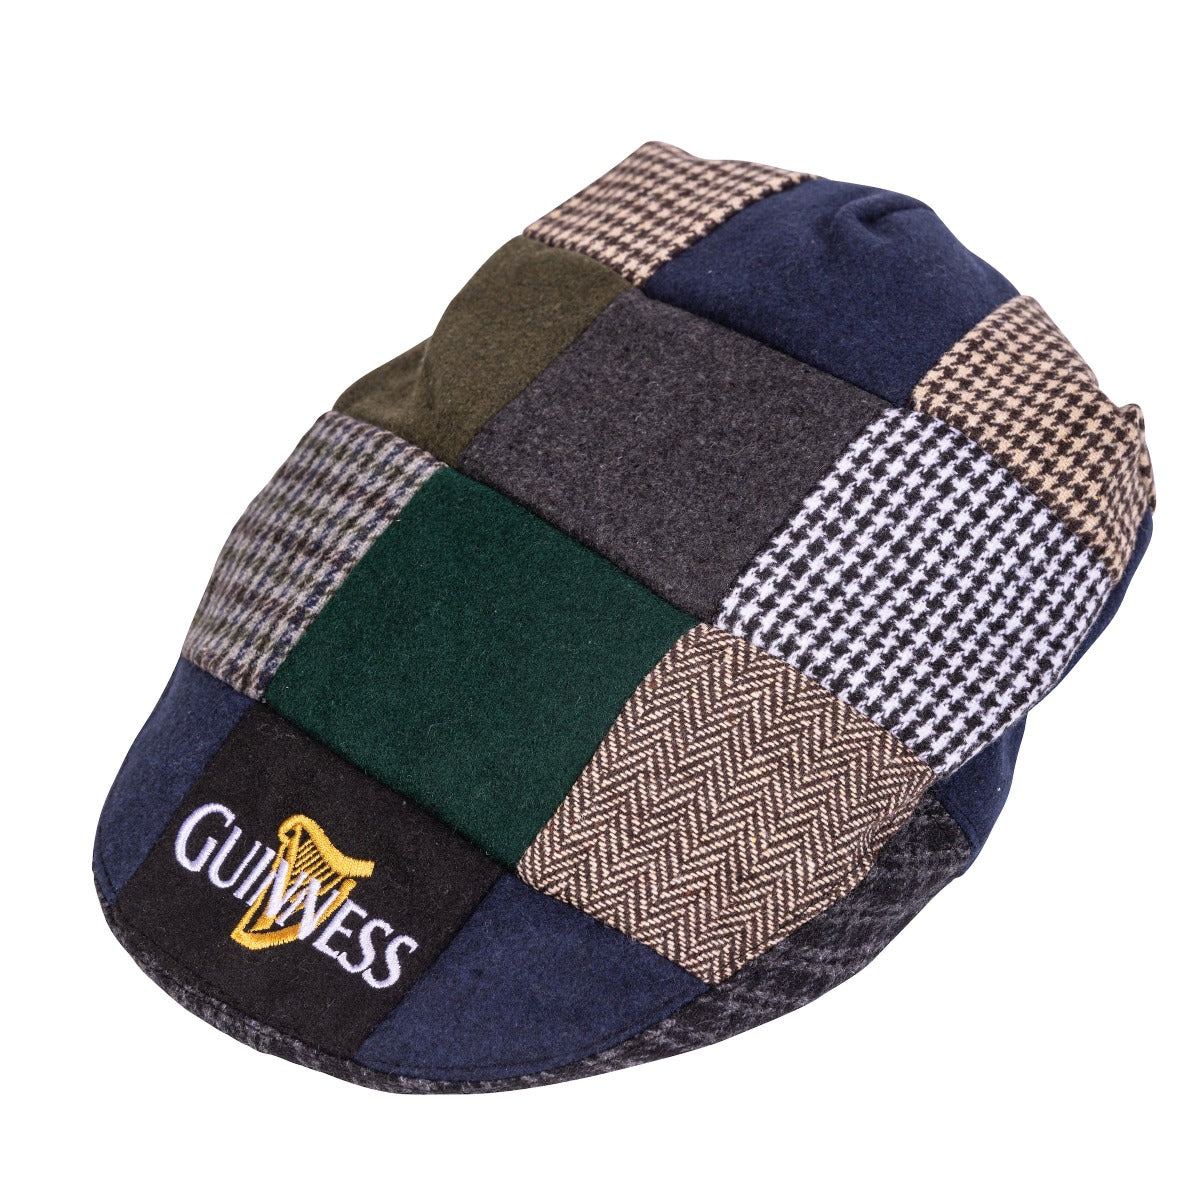 Guinness Multi Texture Tweed Cap